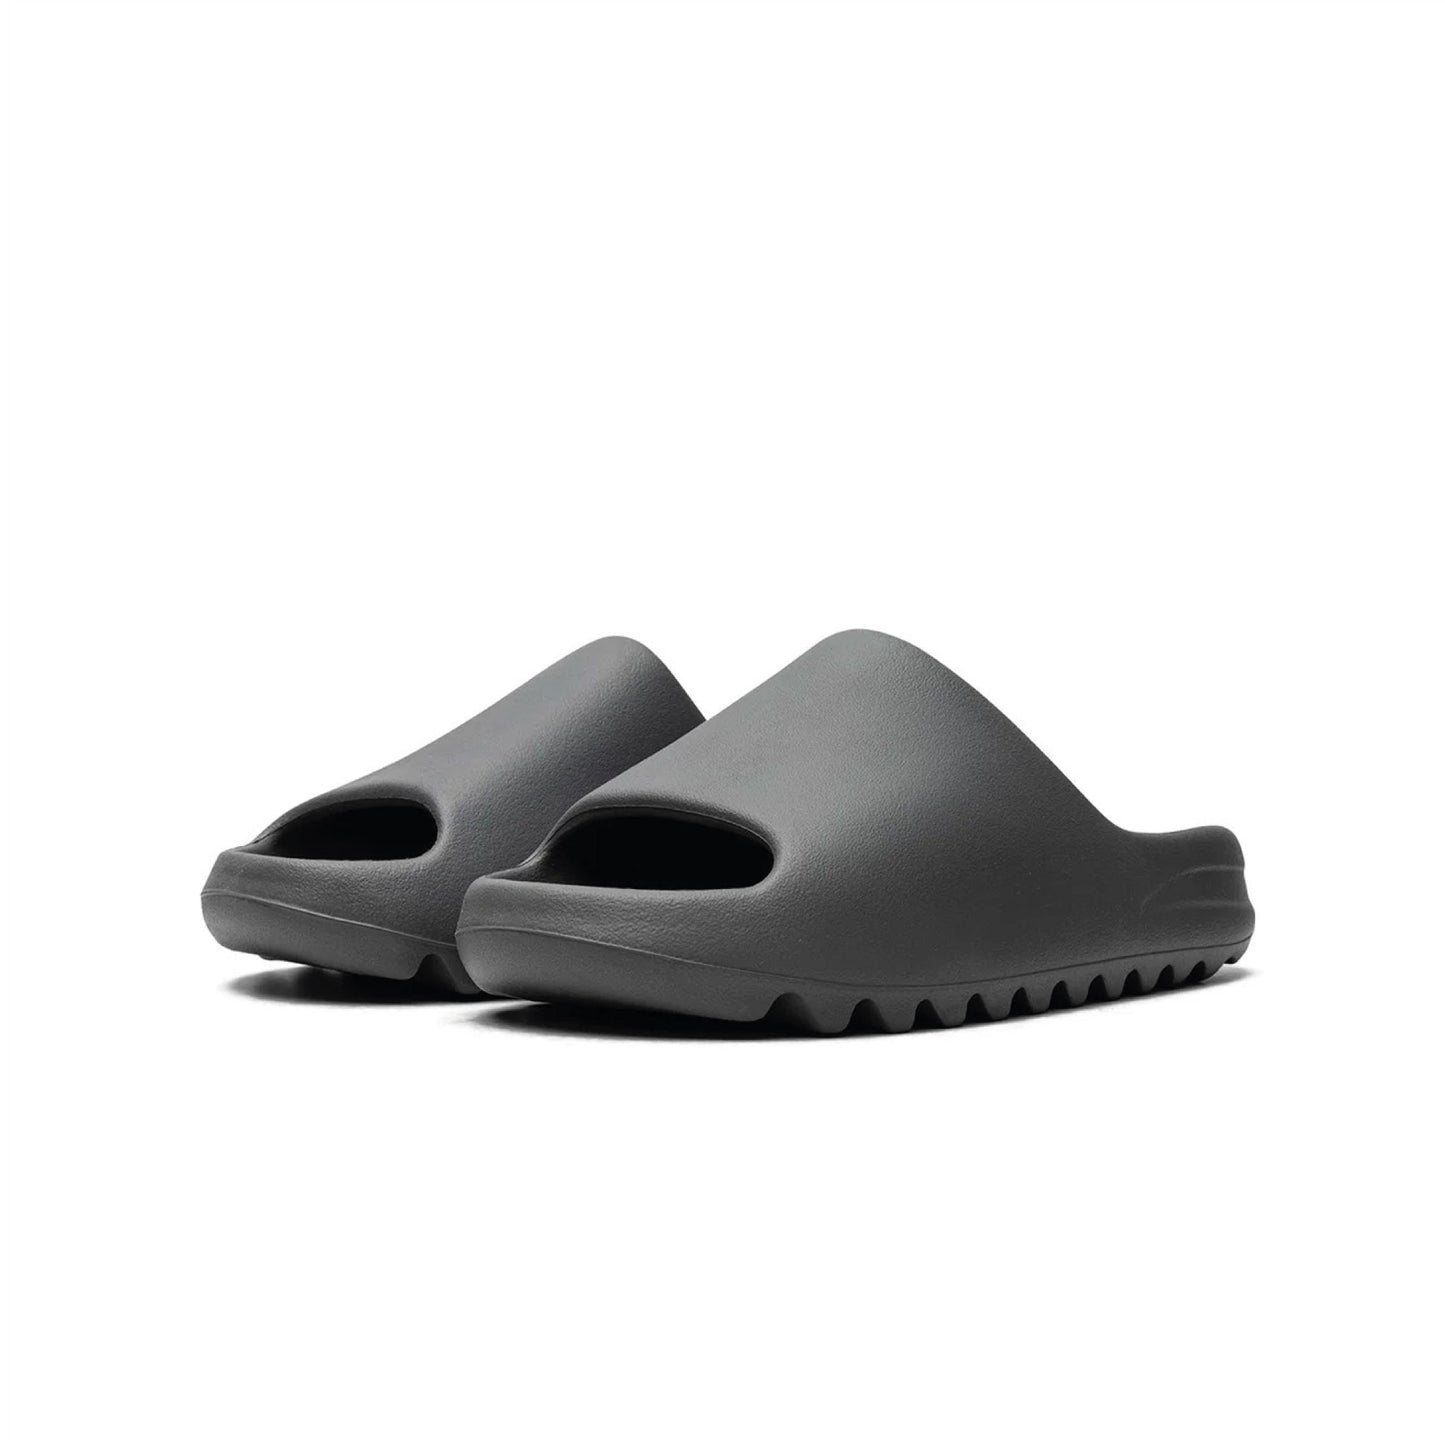 Adidas Yeezy Slide Slate Grey - 48h